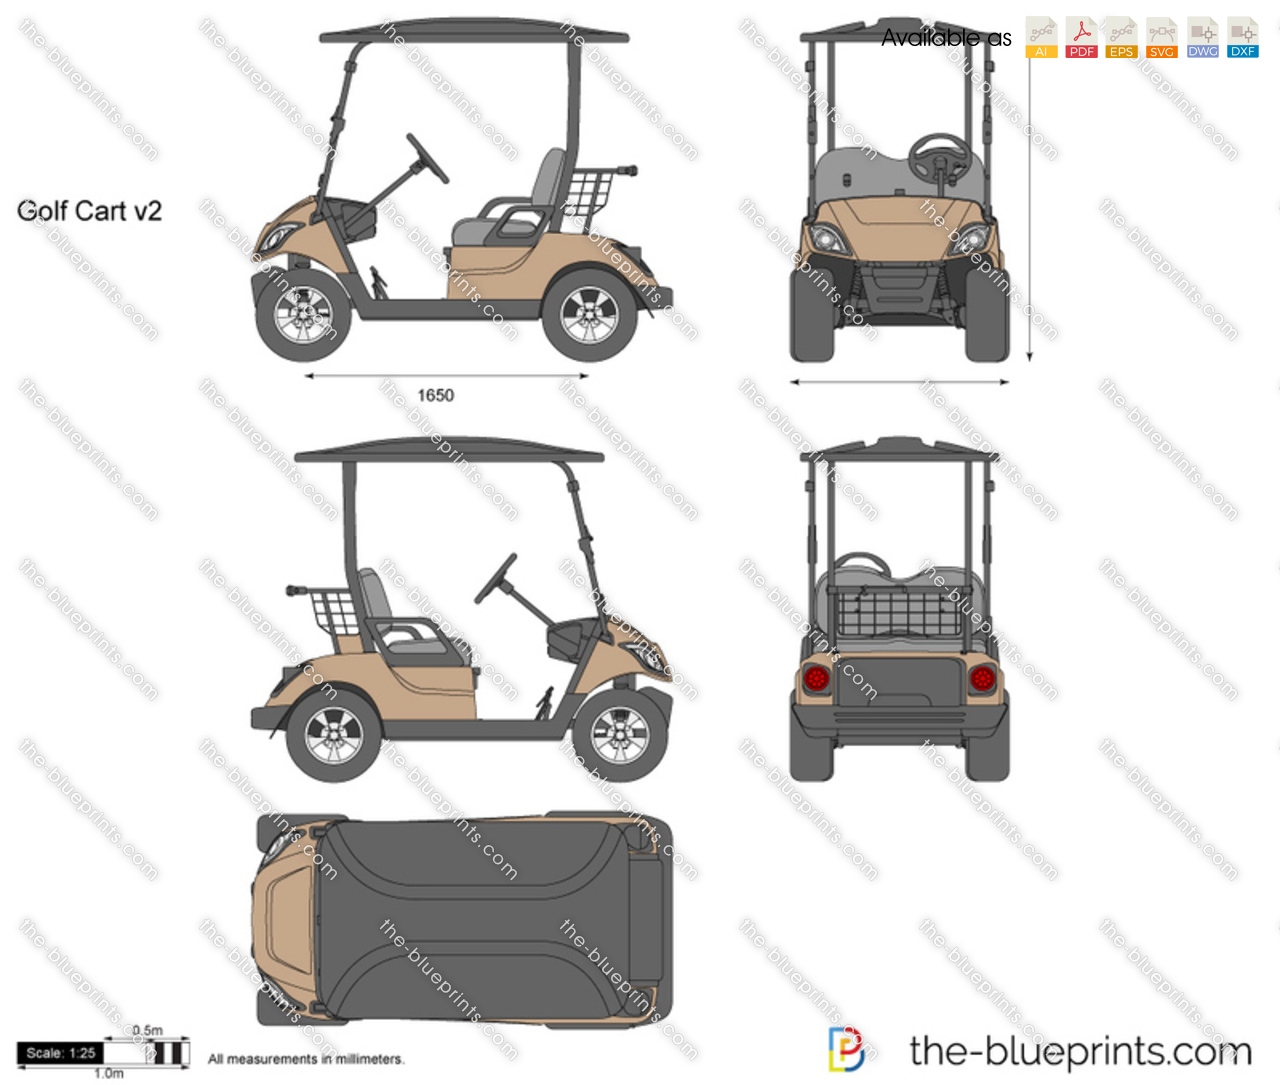 Golf Cart v2